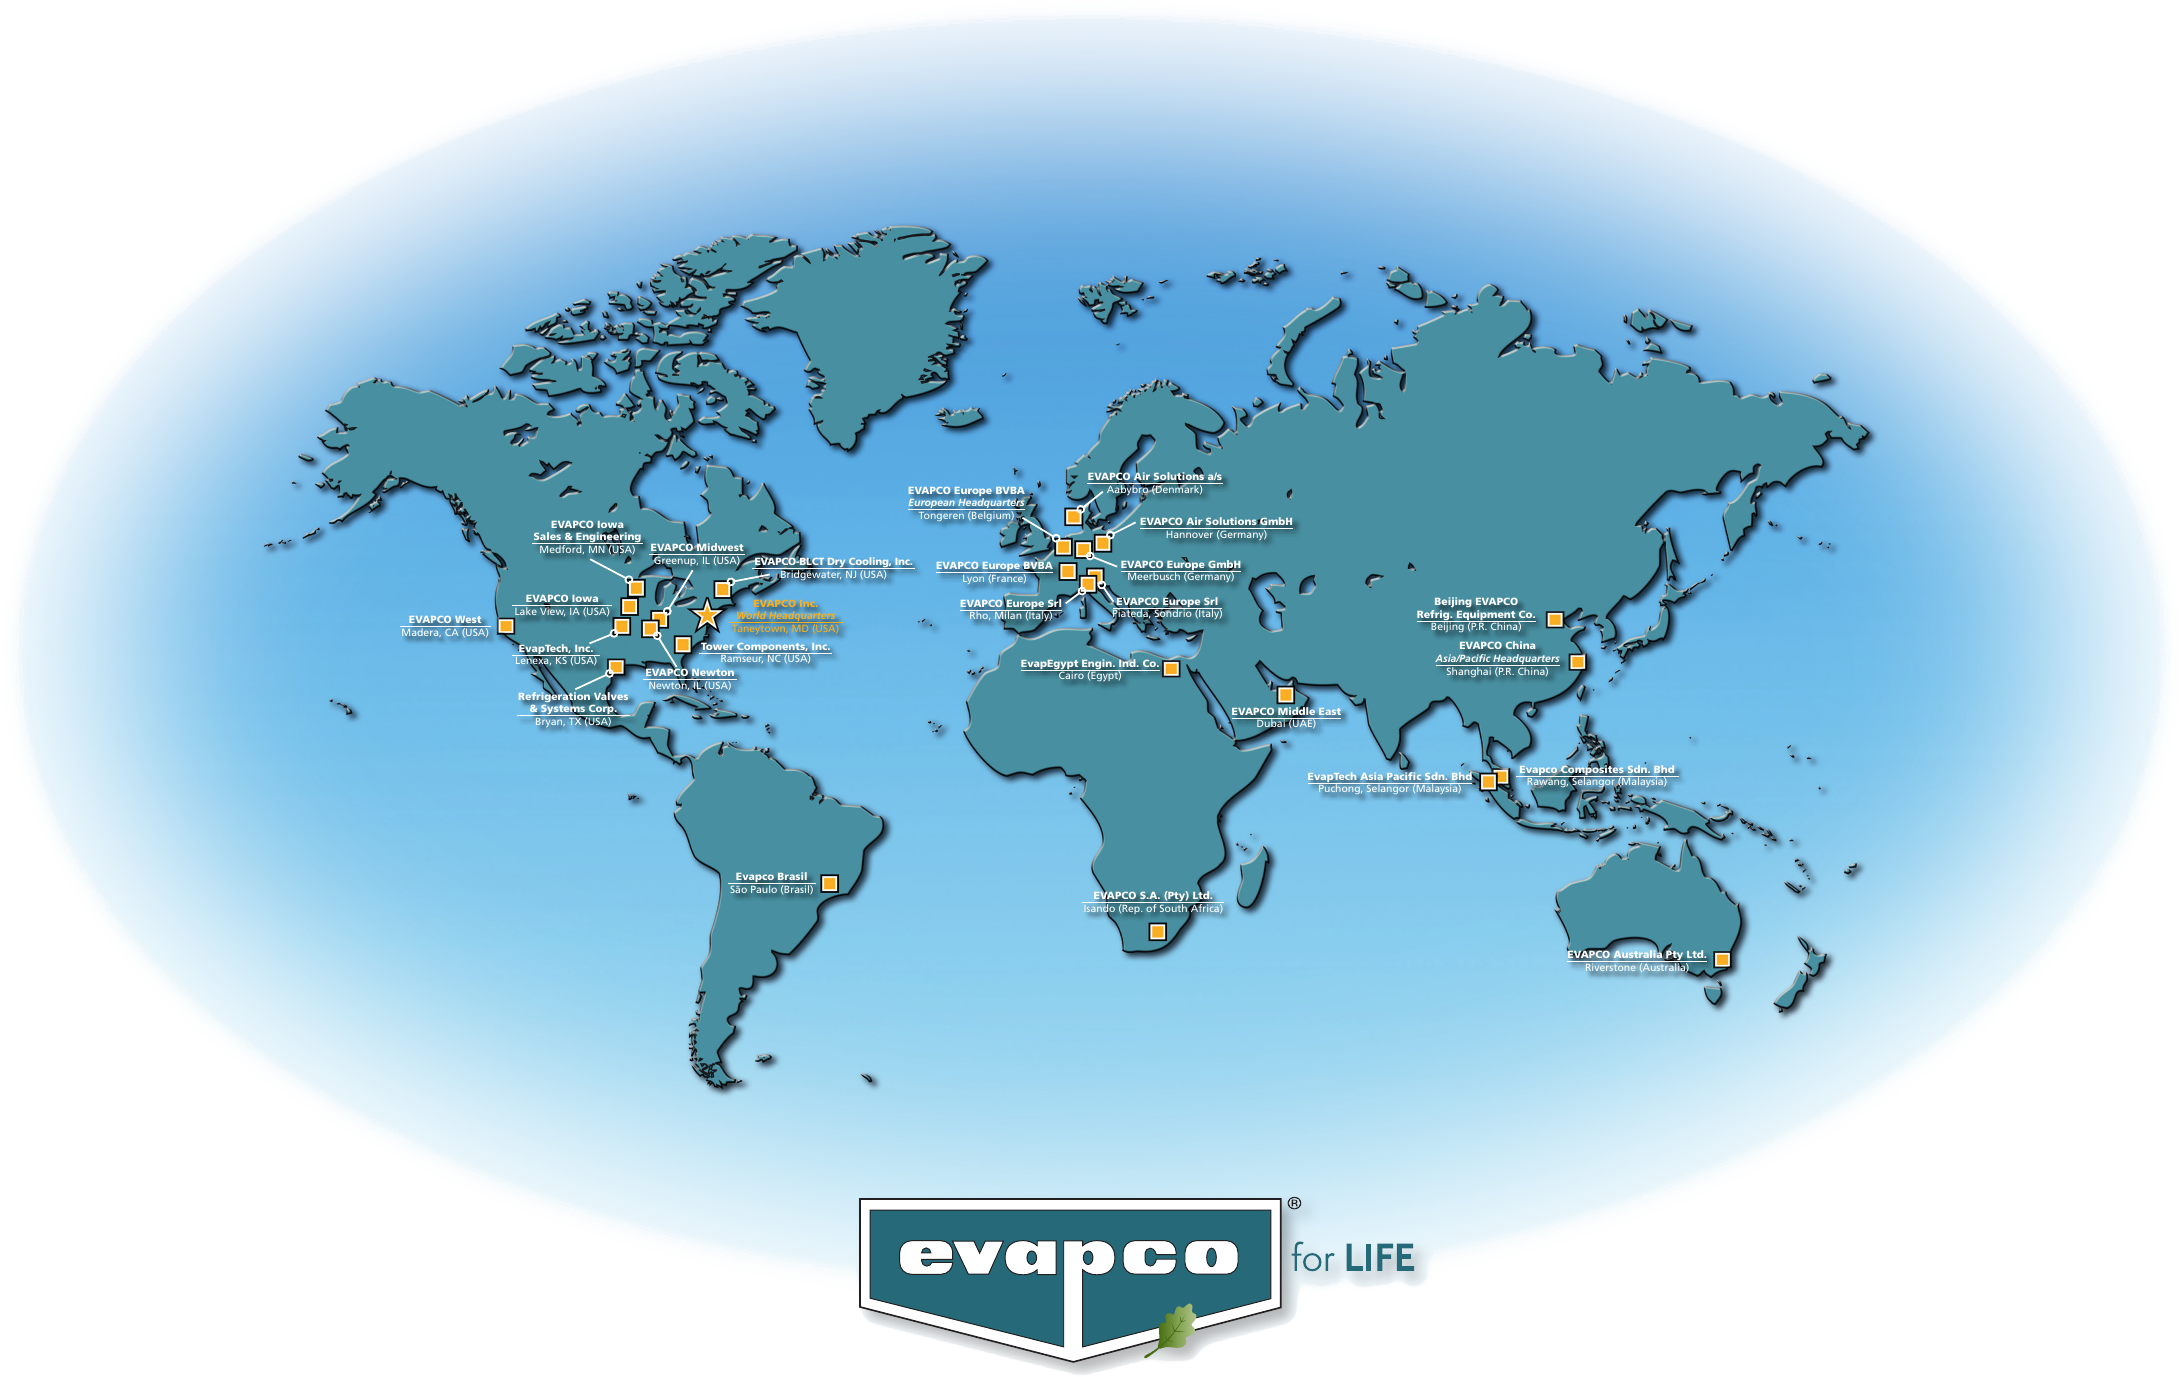 evapco worldwide presence